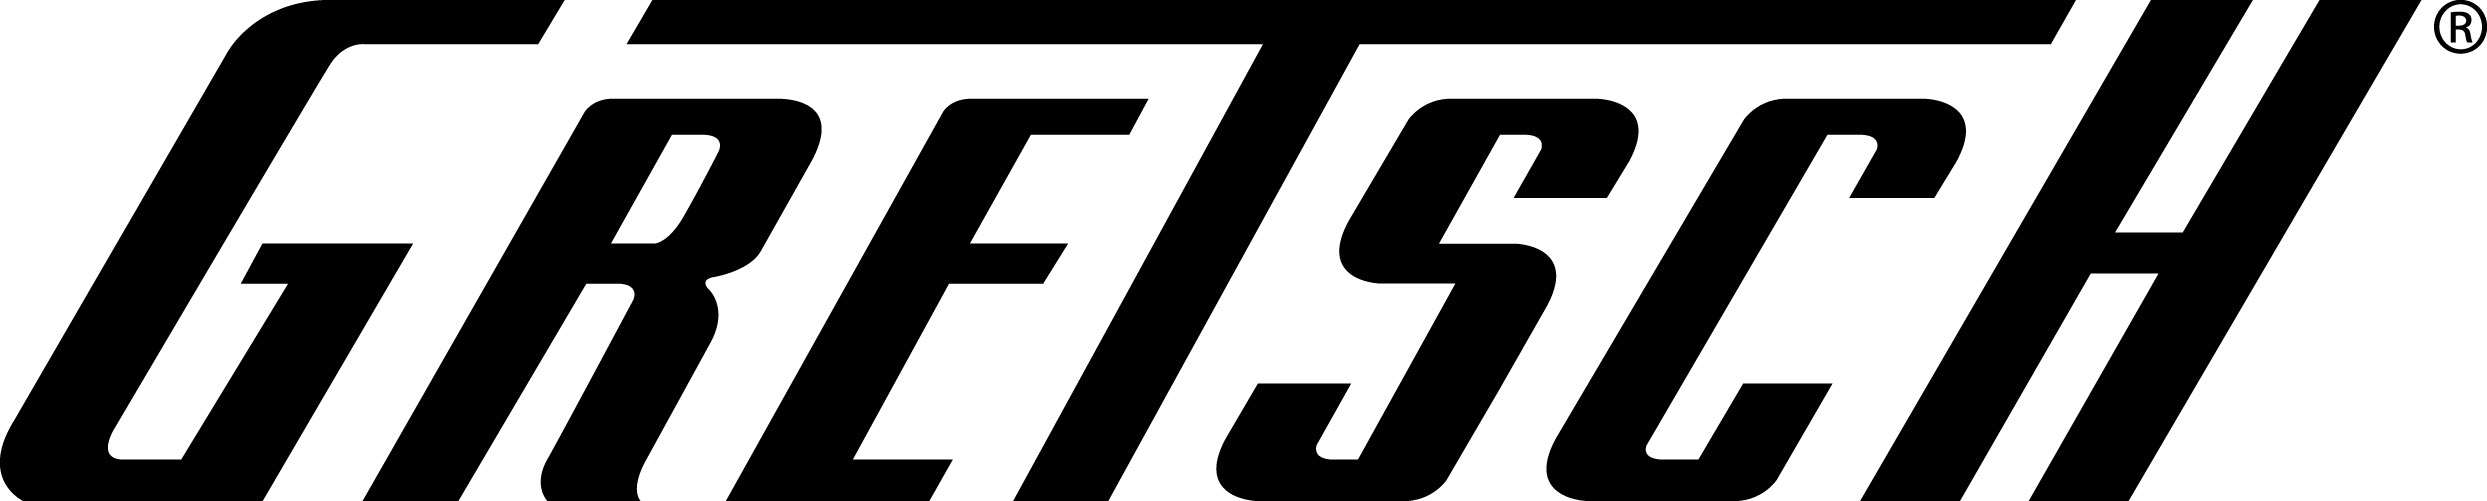 Gretsch-Logo-JPG_1211322035.jpg